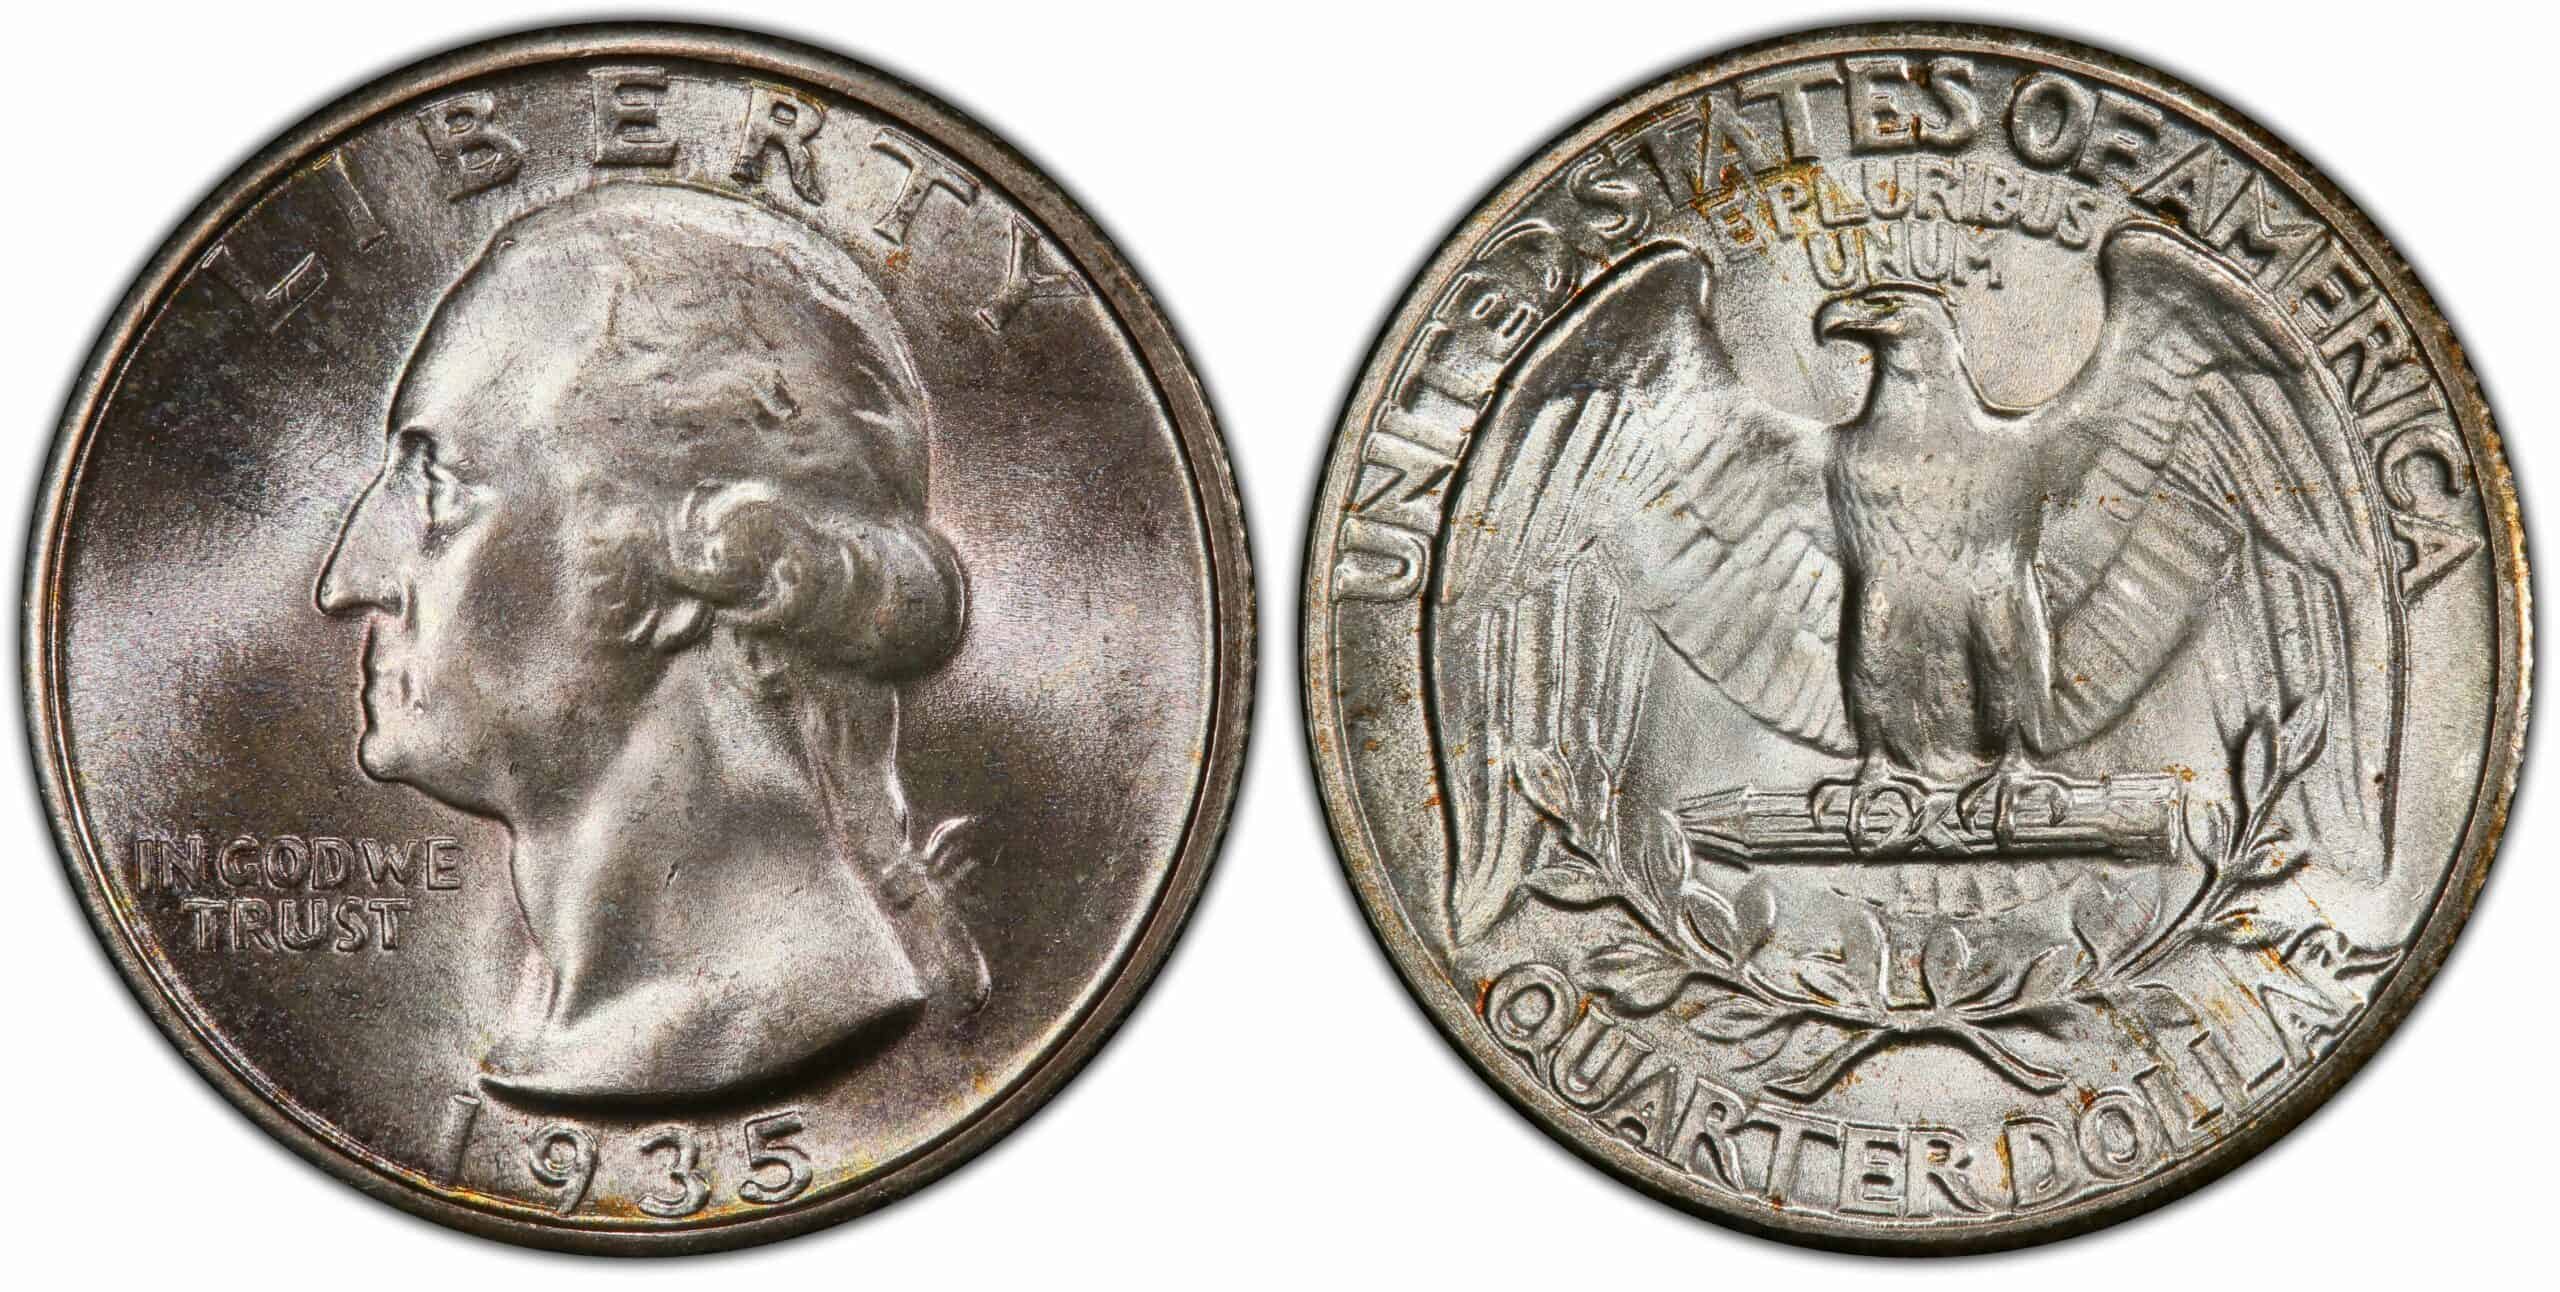 1935 quarter value